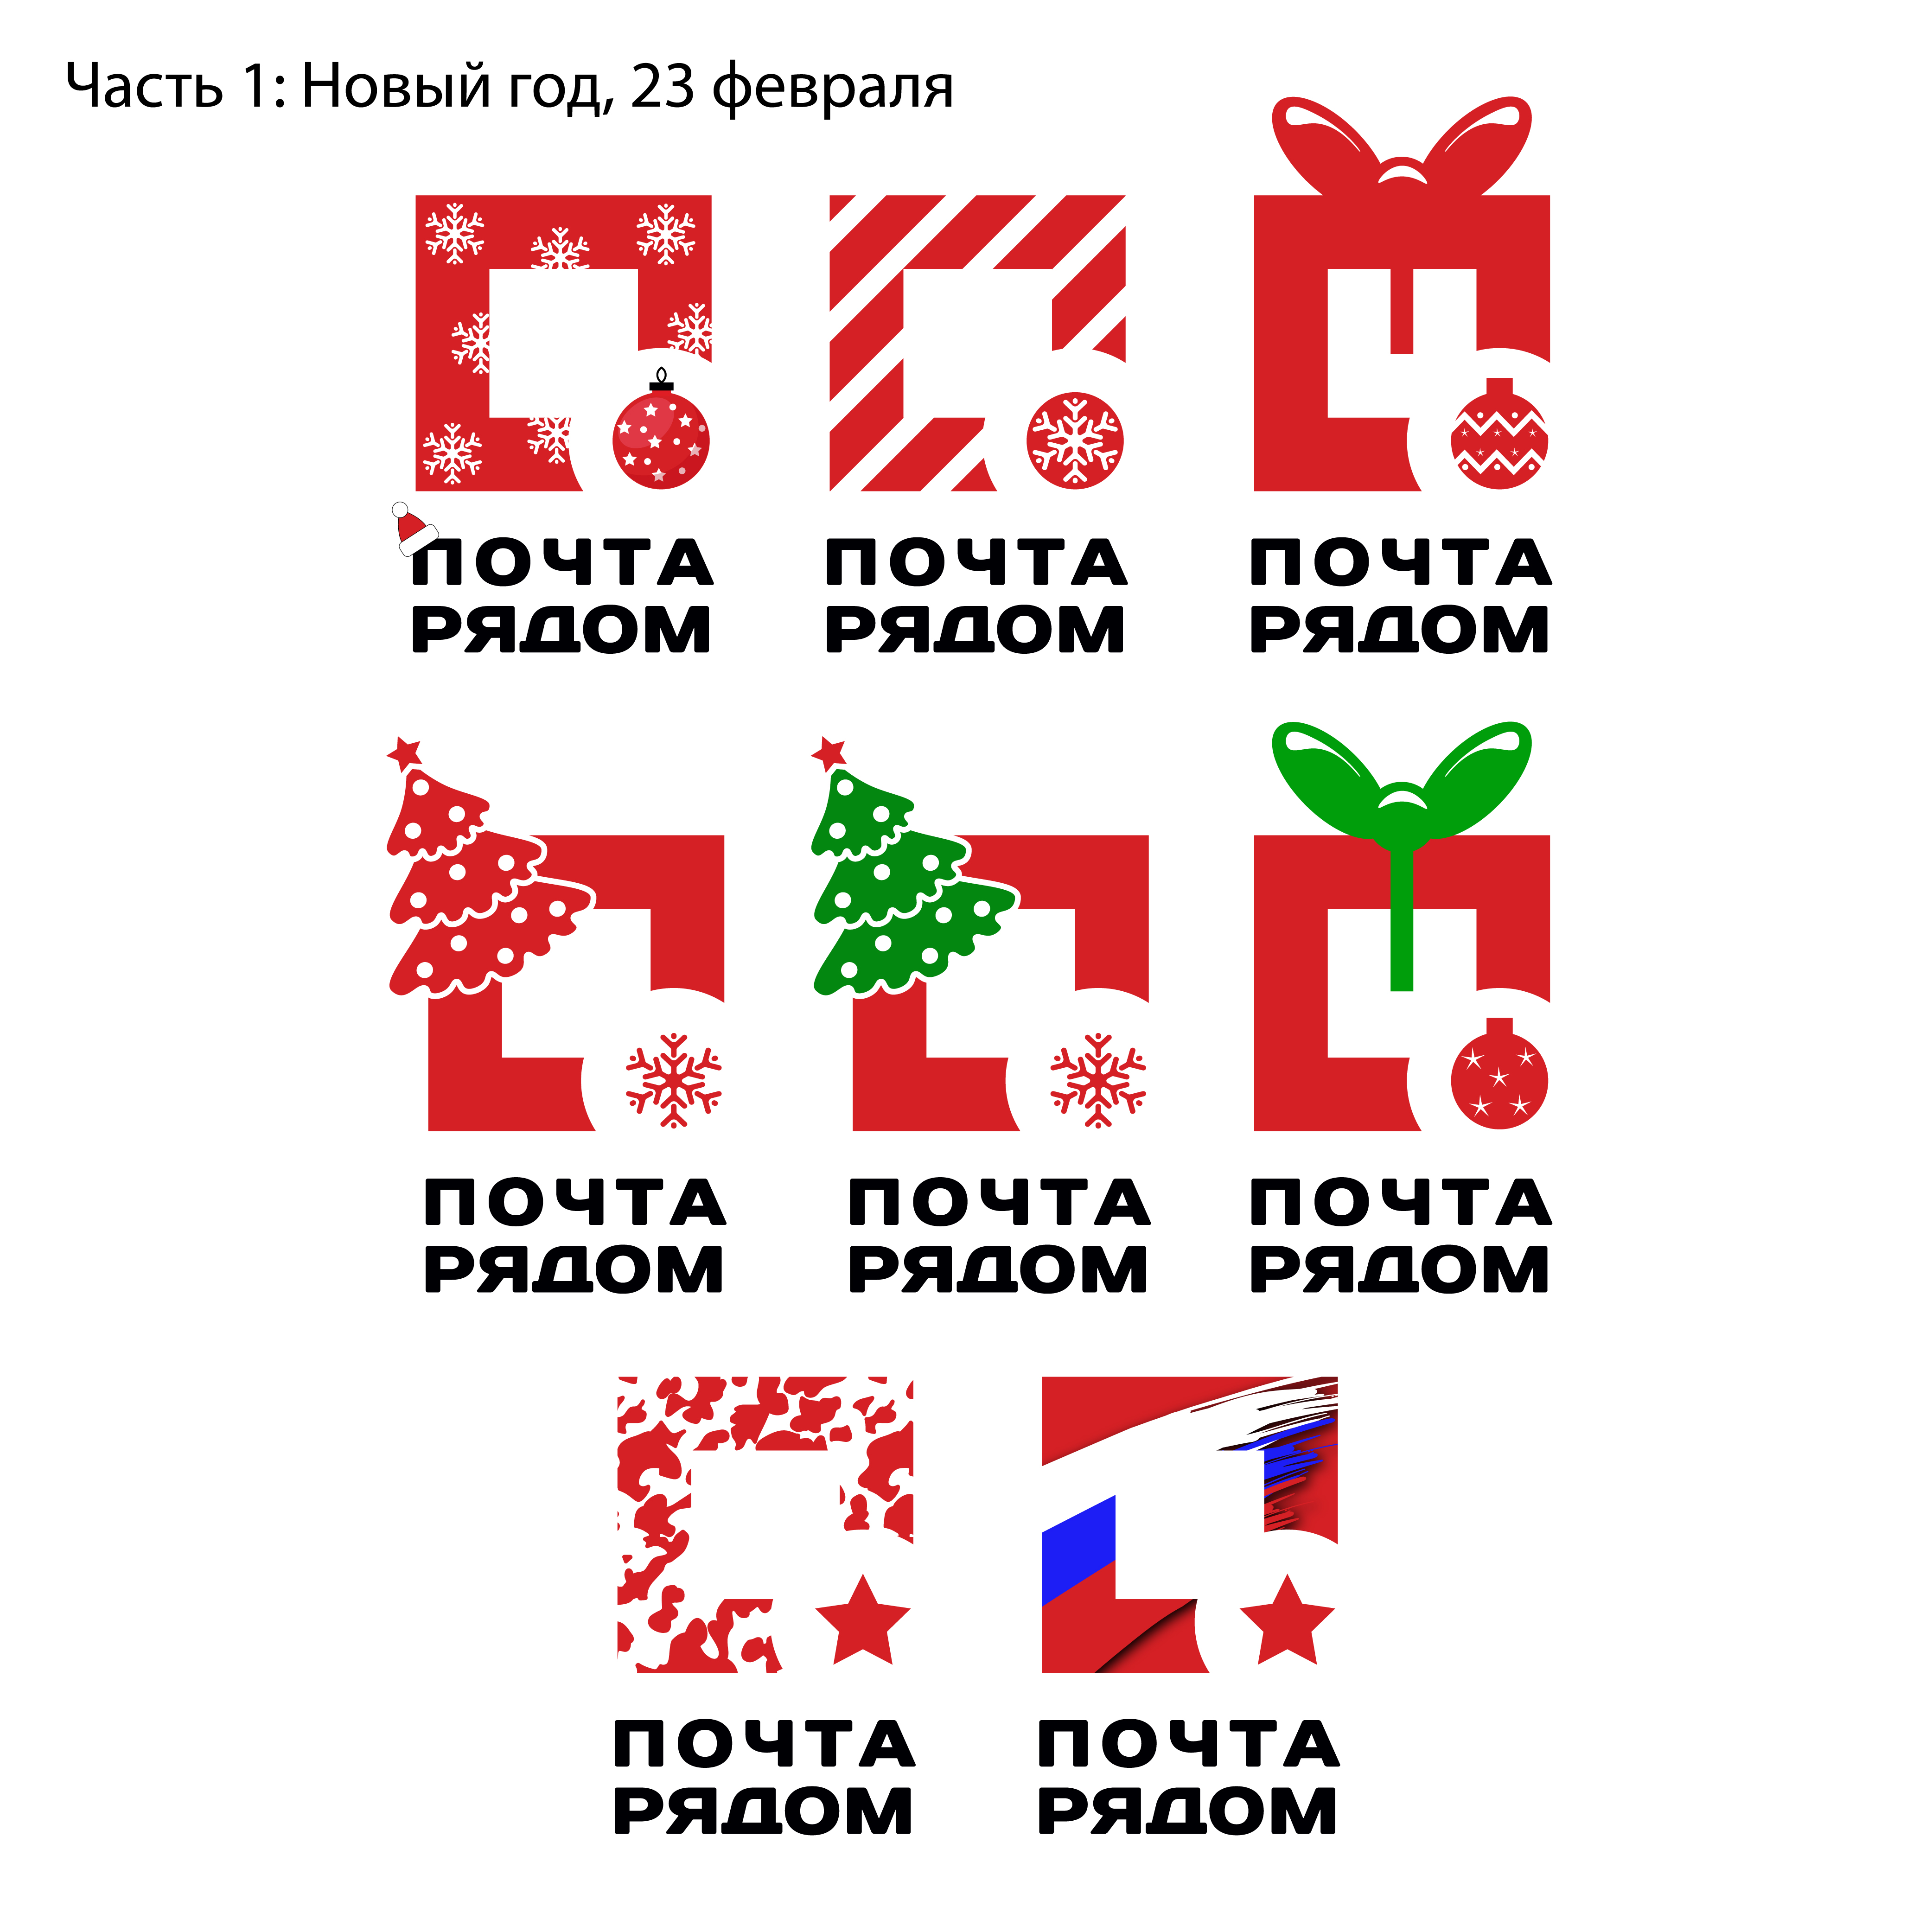 Логотипы Почта рядом часть 1.jpg